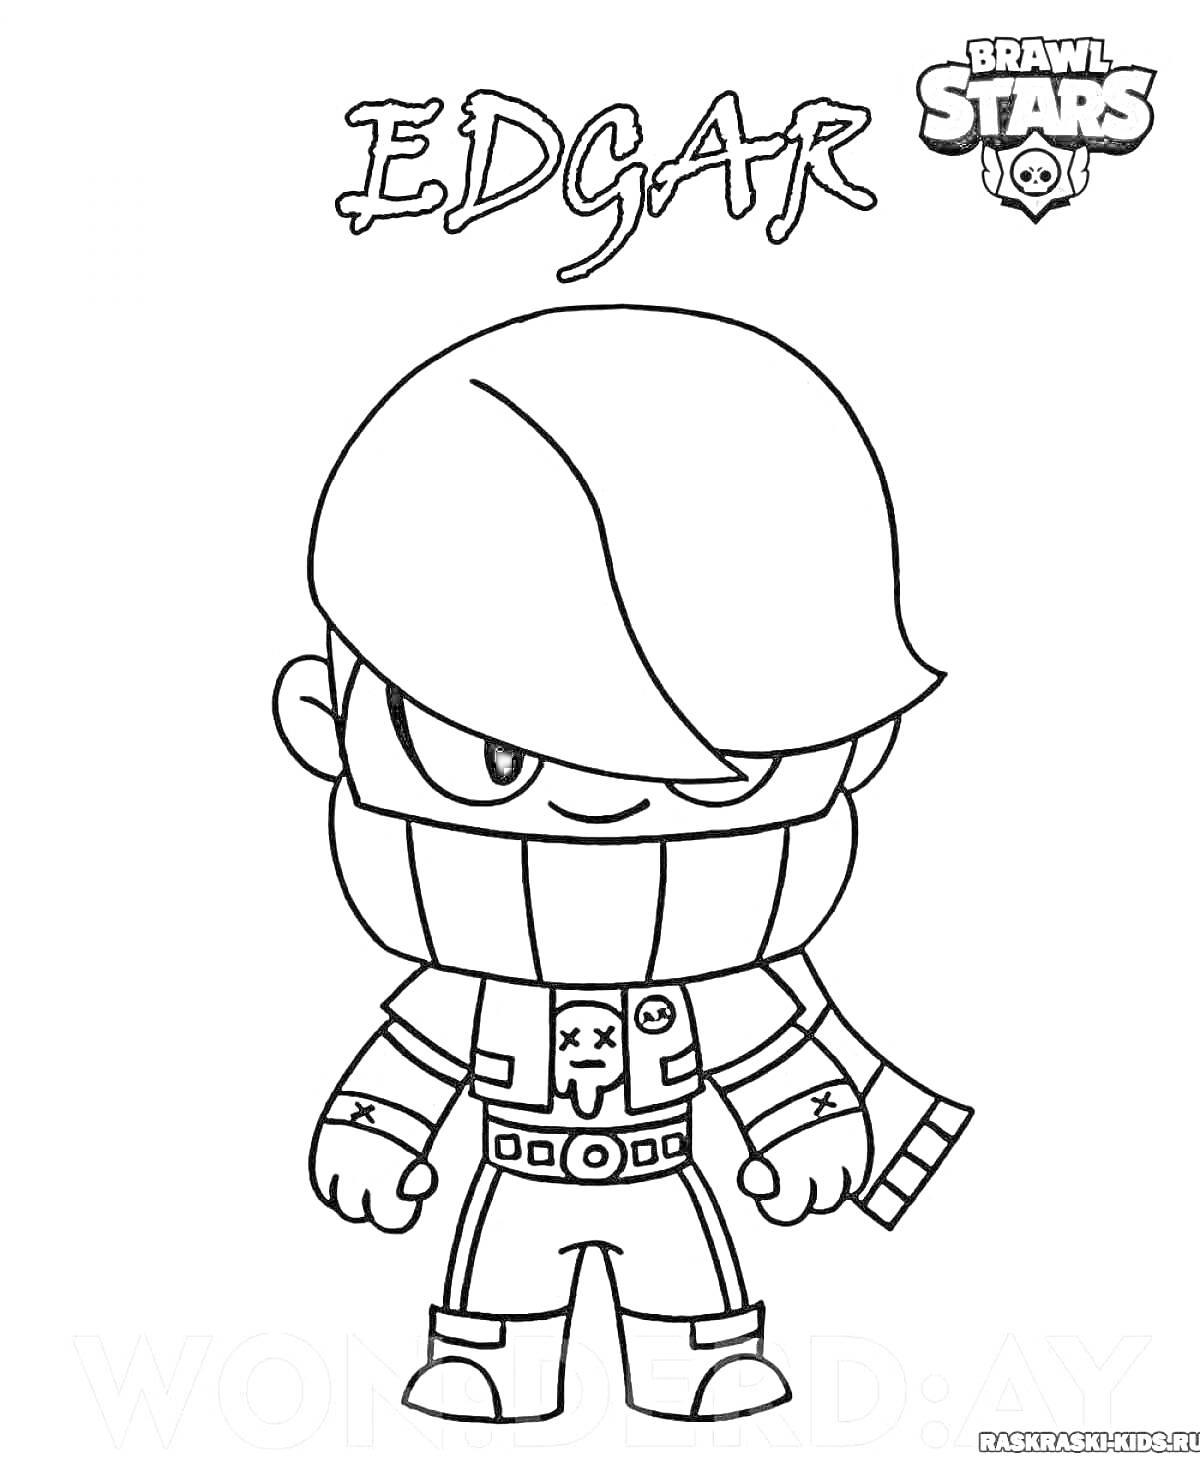 Раскраска Раскраска с персонажем Эдгар из игры Brawl Stars, с крупной надписью 